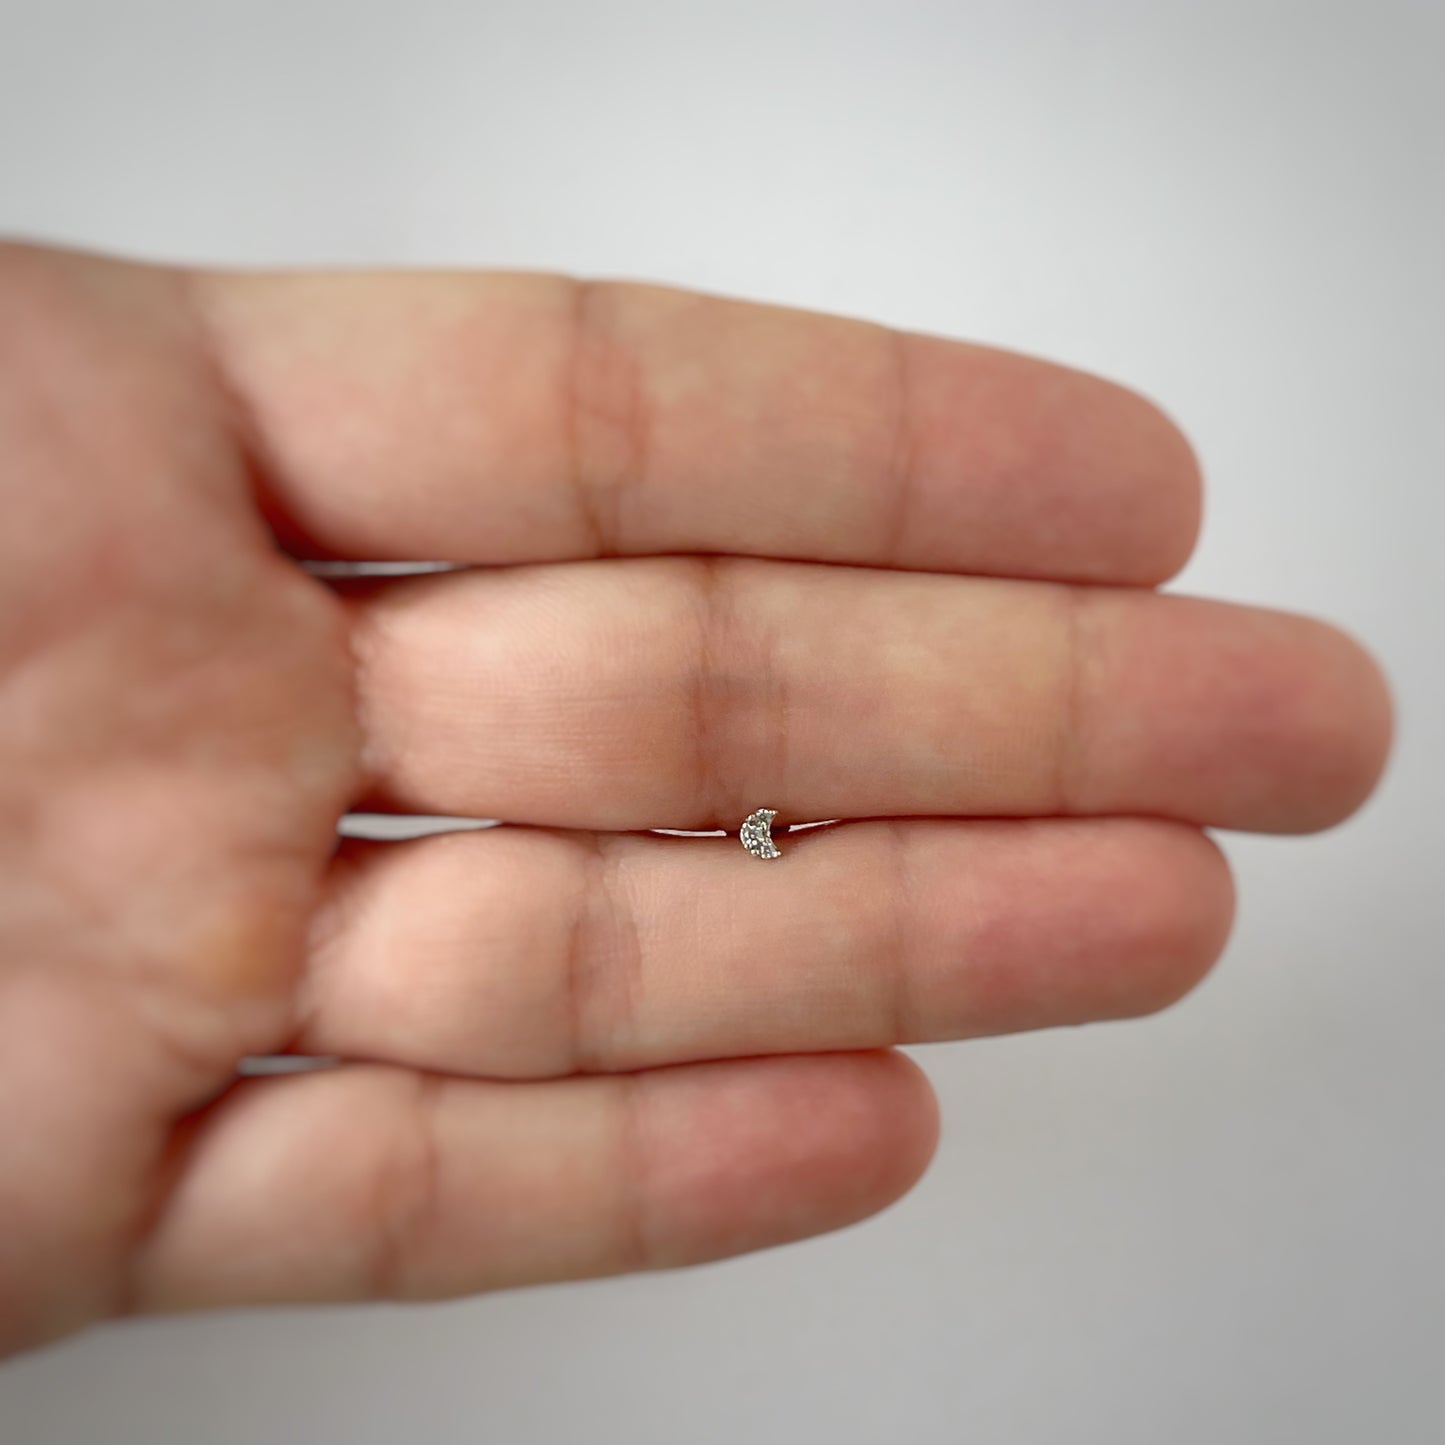 Arete piercing single media luna mini con circonita en oro blanco de 14k